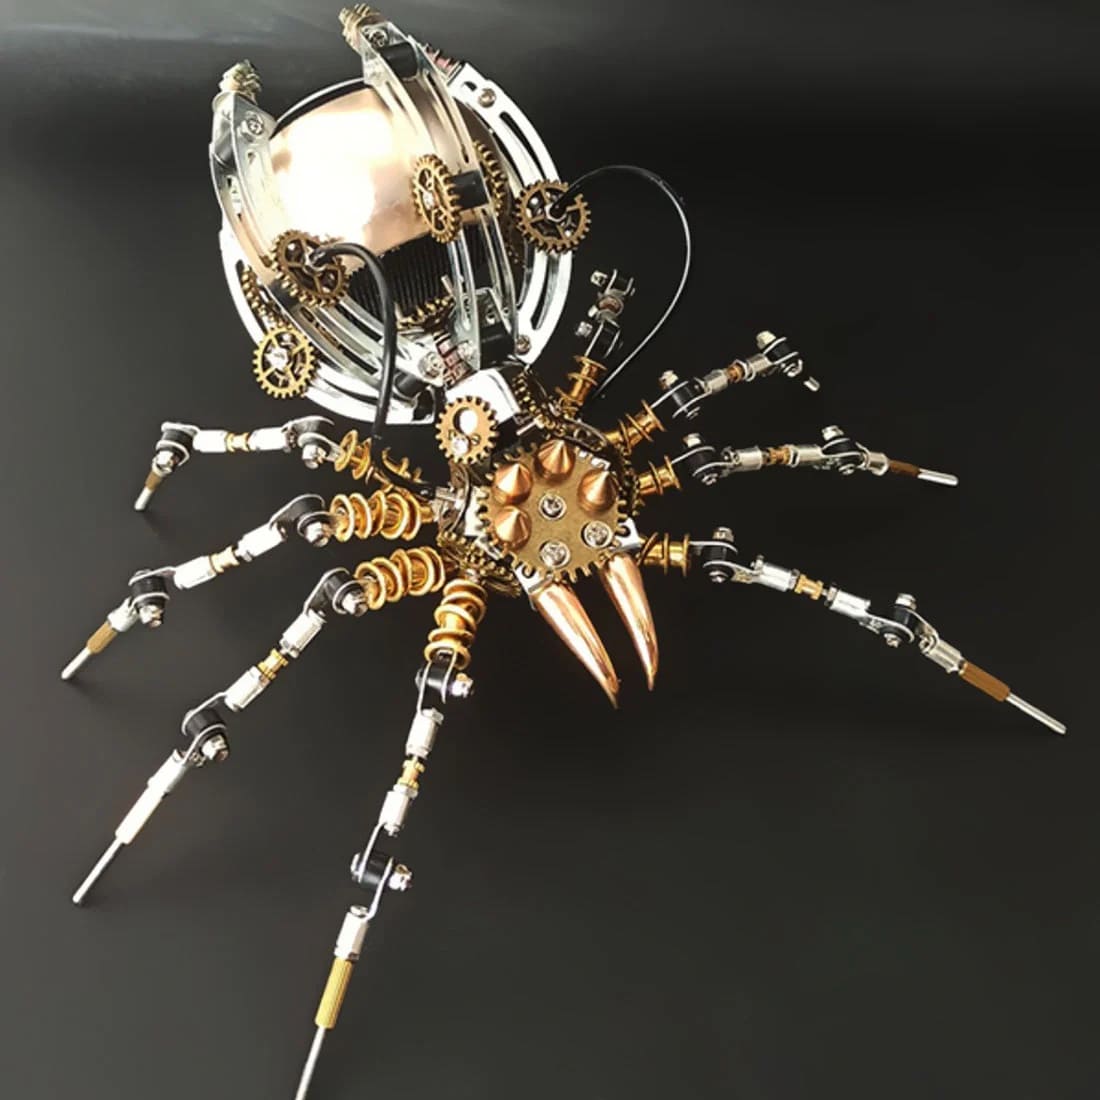 modelo de araña 3D + altavoz bluetooth